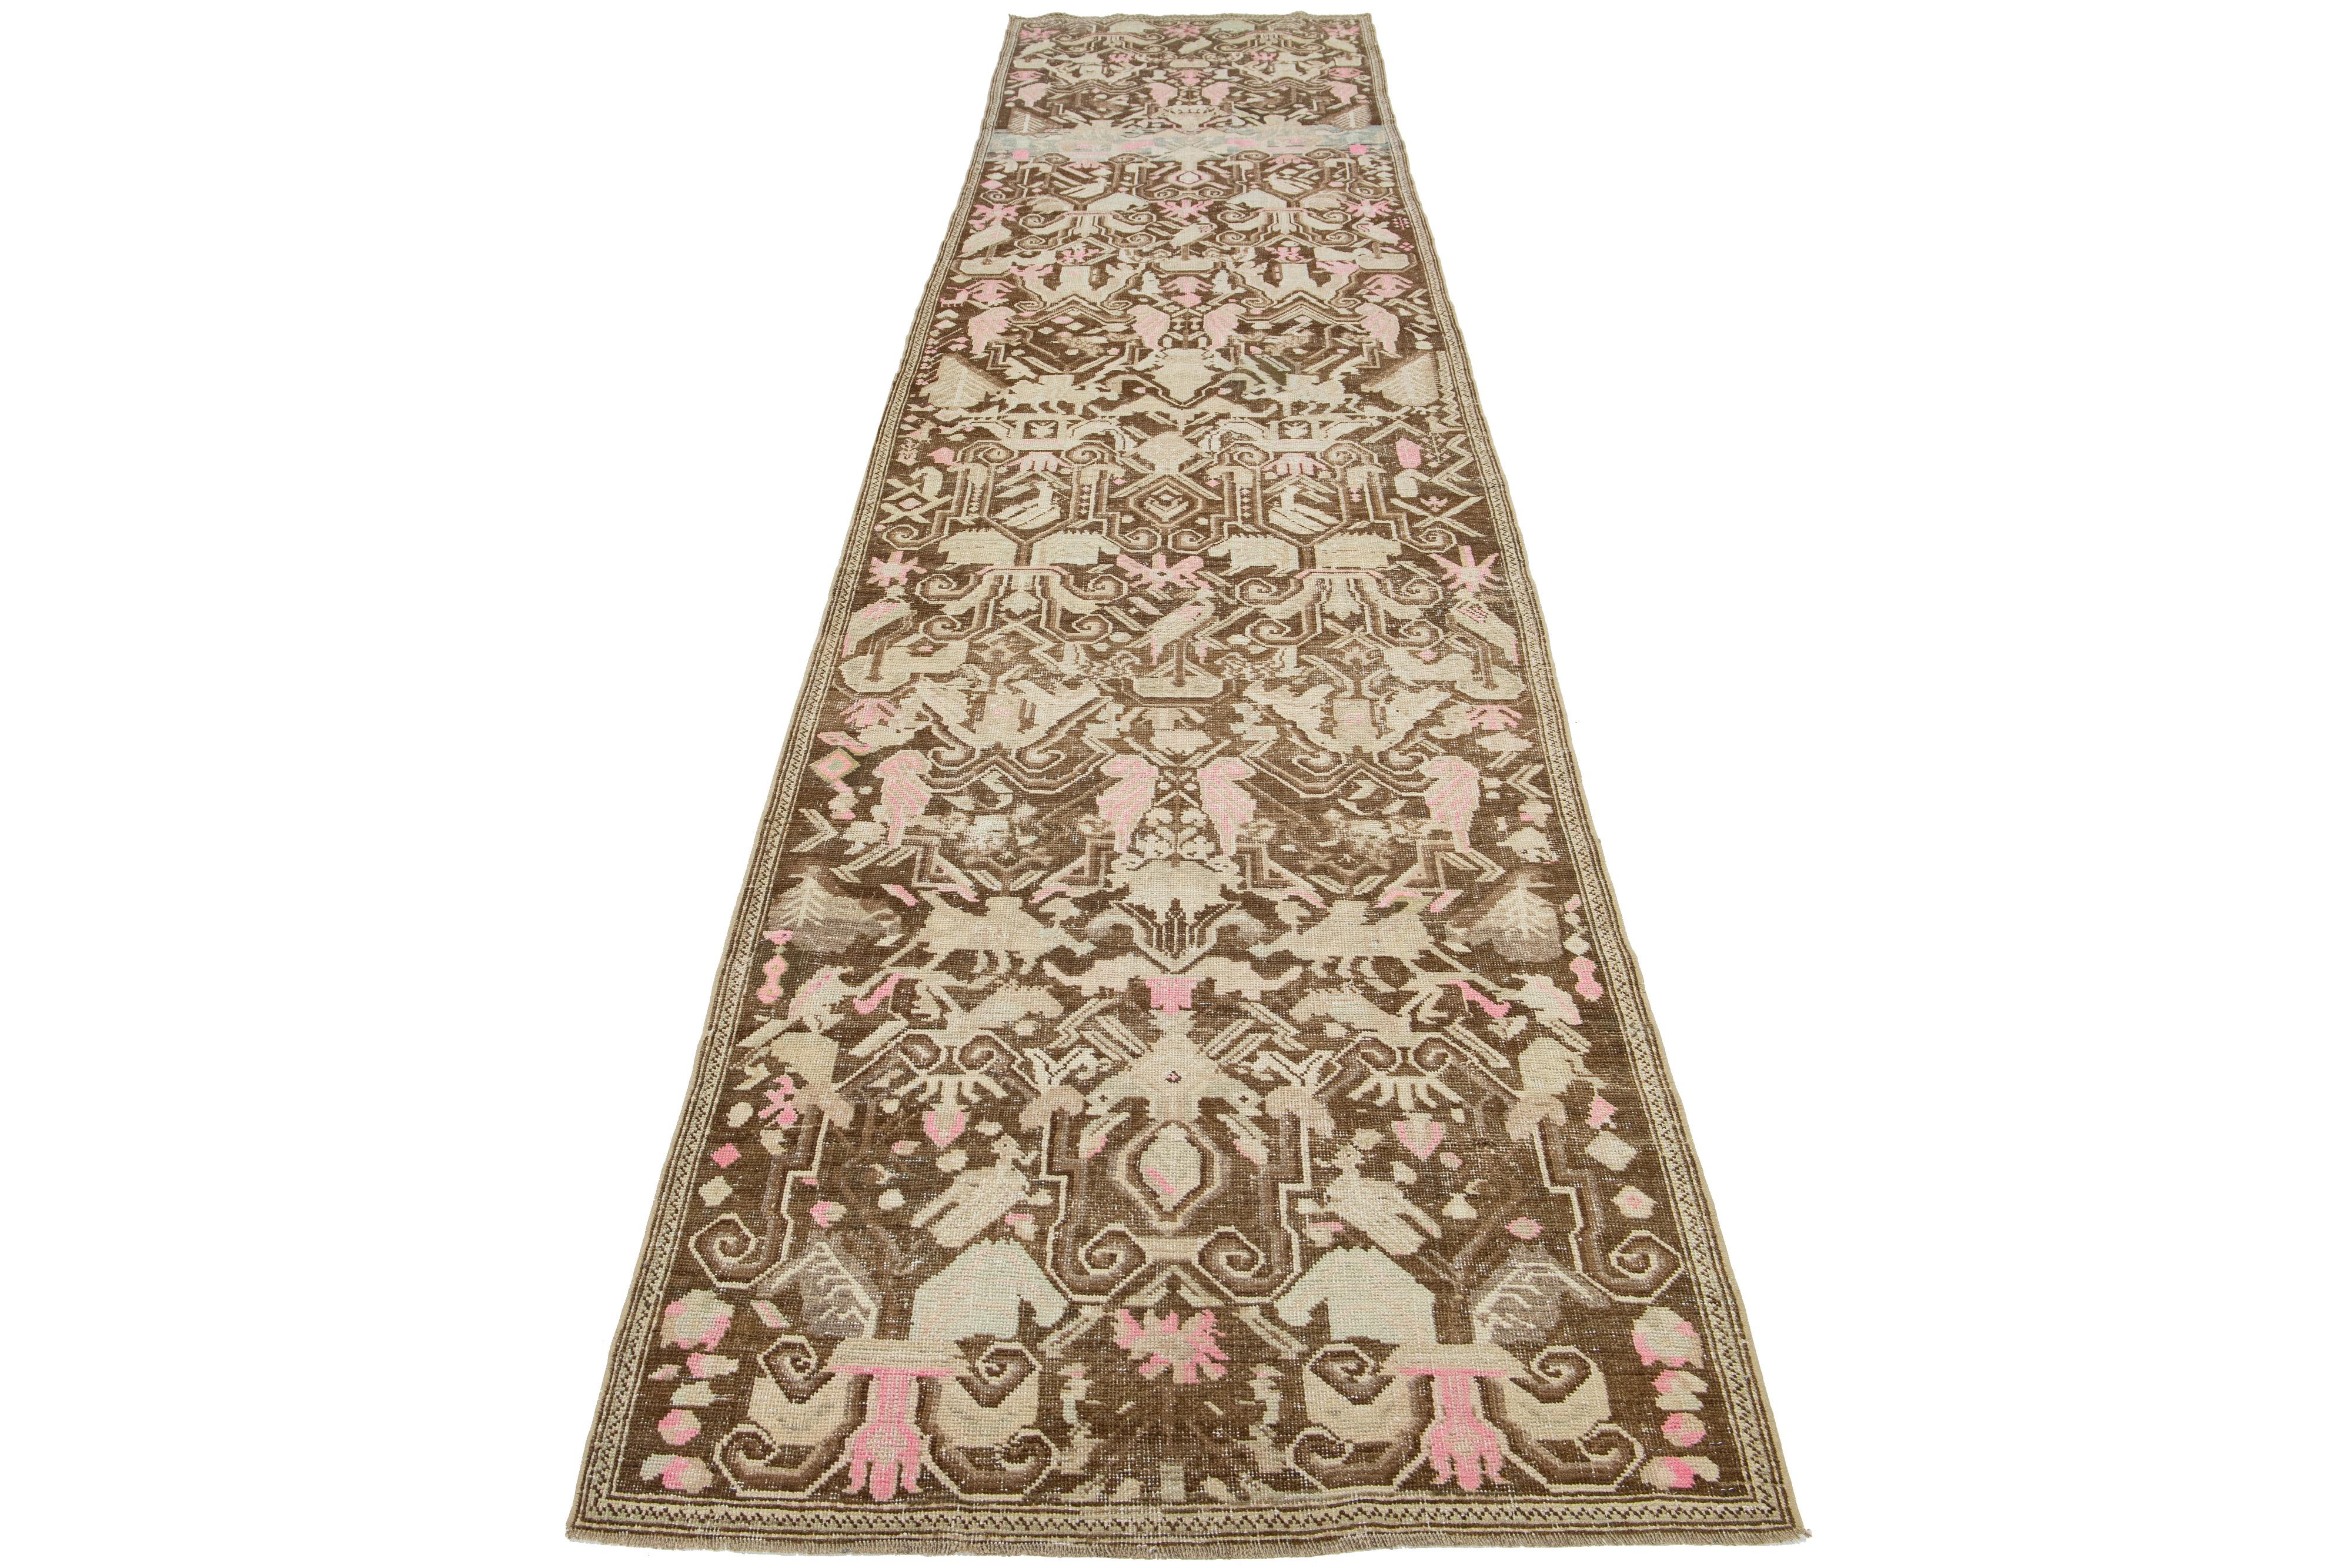 Dies ist ein schöner antiker Karabagh handgeknüpfter Wollläufer mit einem braunen Feld. Der Teppich zeigt Akzente in Beige und Rosa in einem atemberaubenden Allover-Muster.

Dieser Teppich misst 3'5